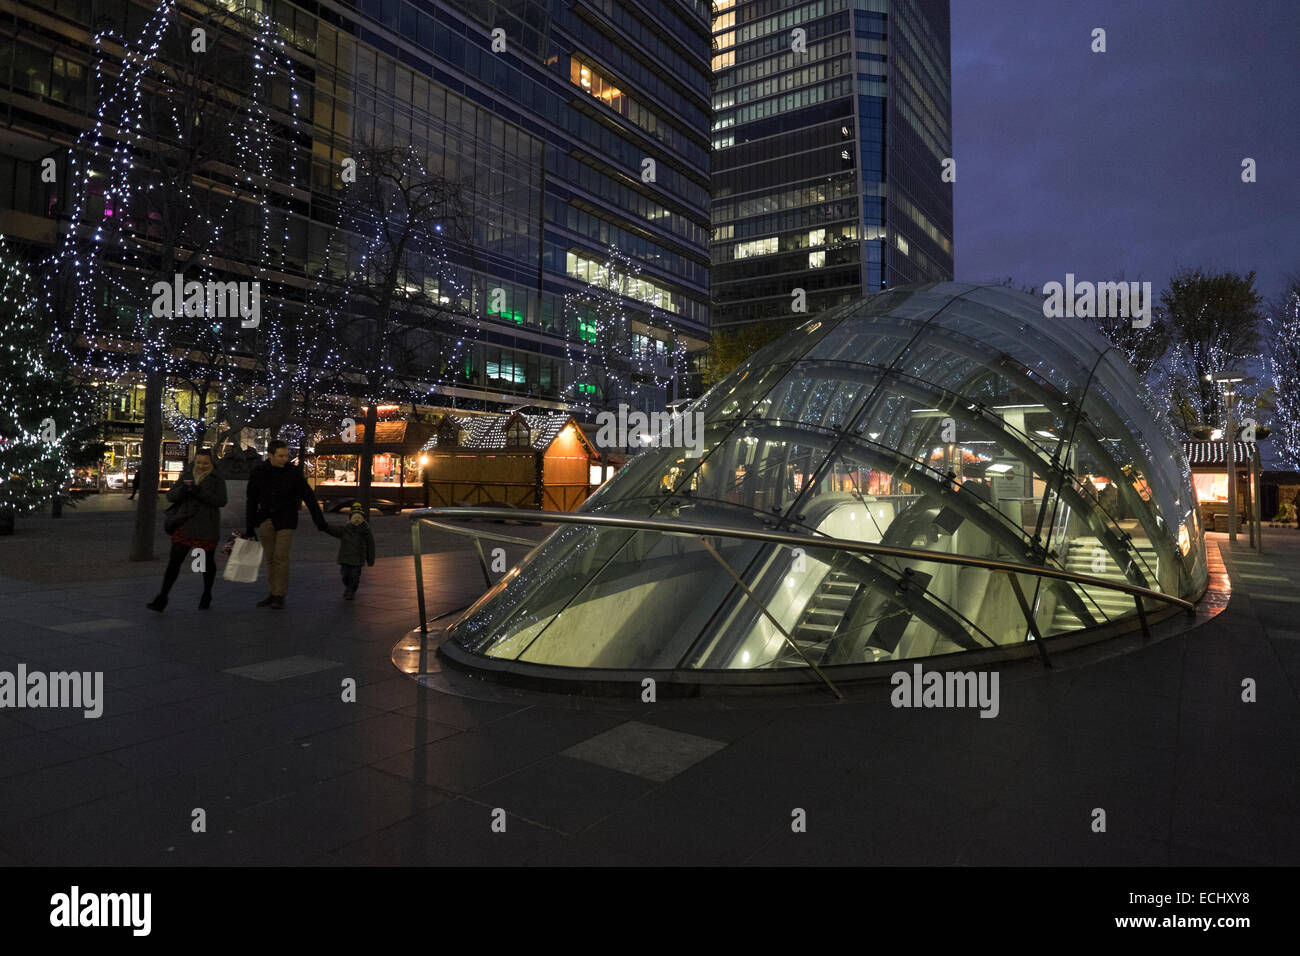 La station de métro Canary Wharf de nuit Banque D'Images